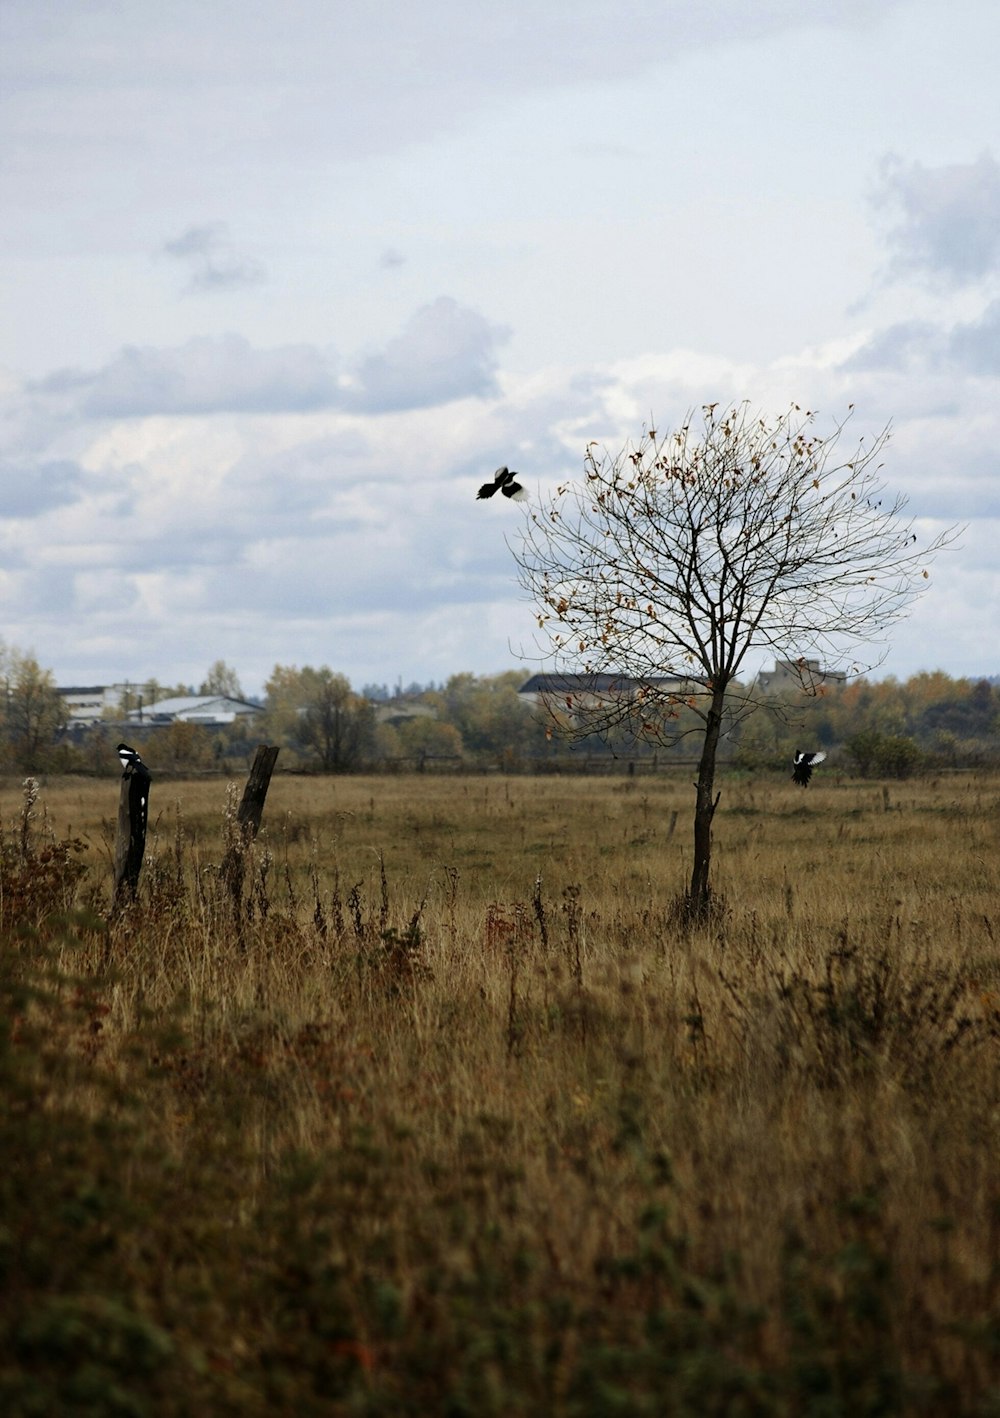 black bird on brown grass field during daytime